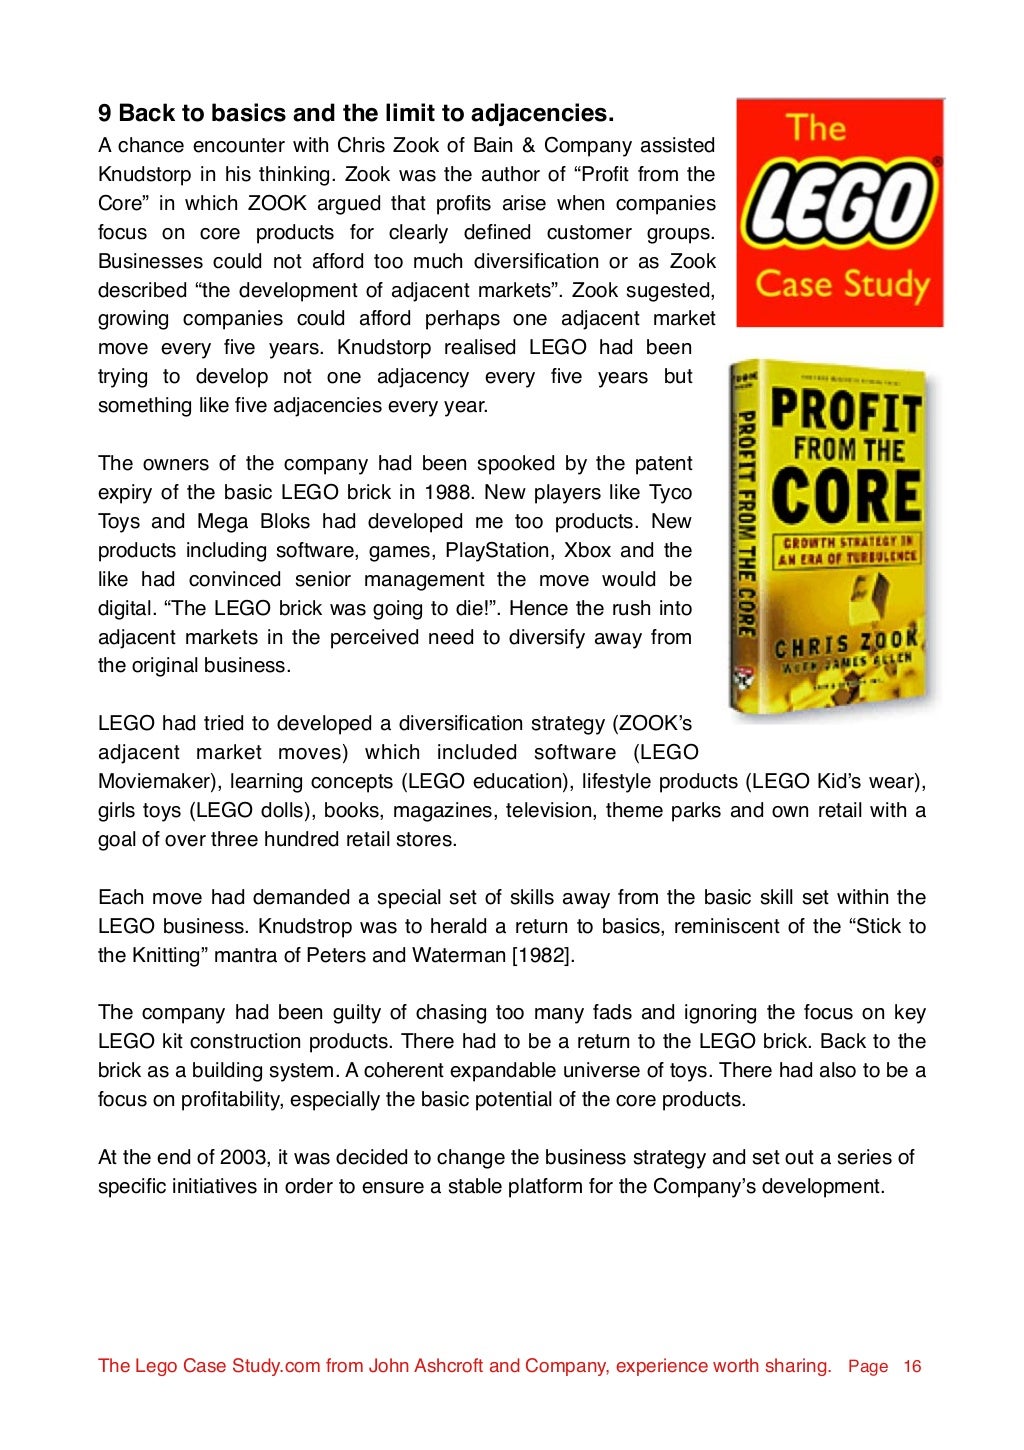 lego turnaround case study